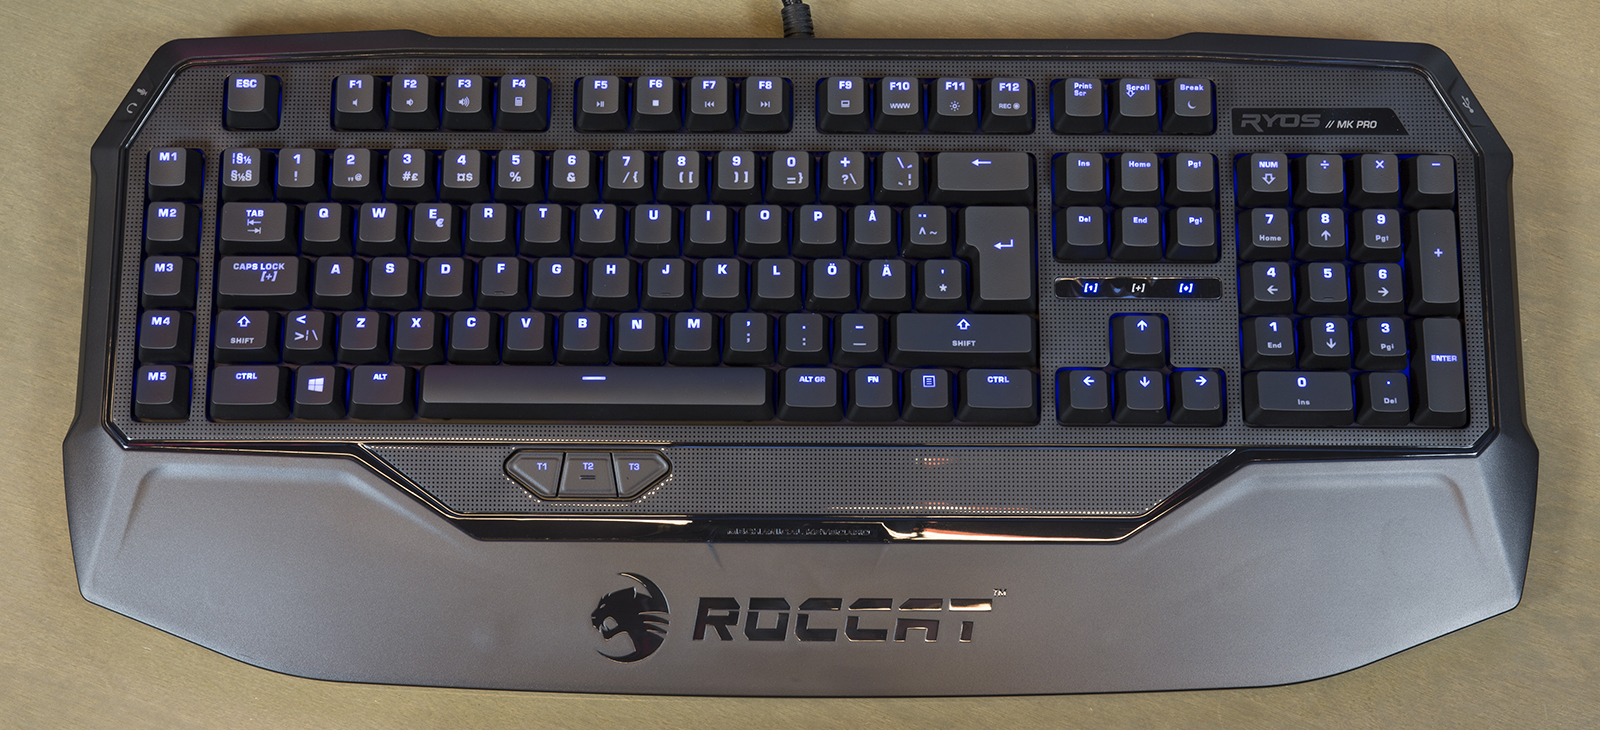 Roccat Ryos MK Pro klaviatuur sisselülitatud taustvalgustusega